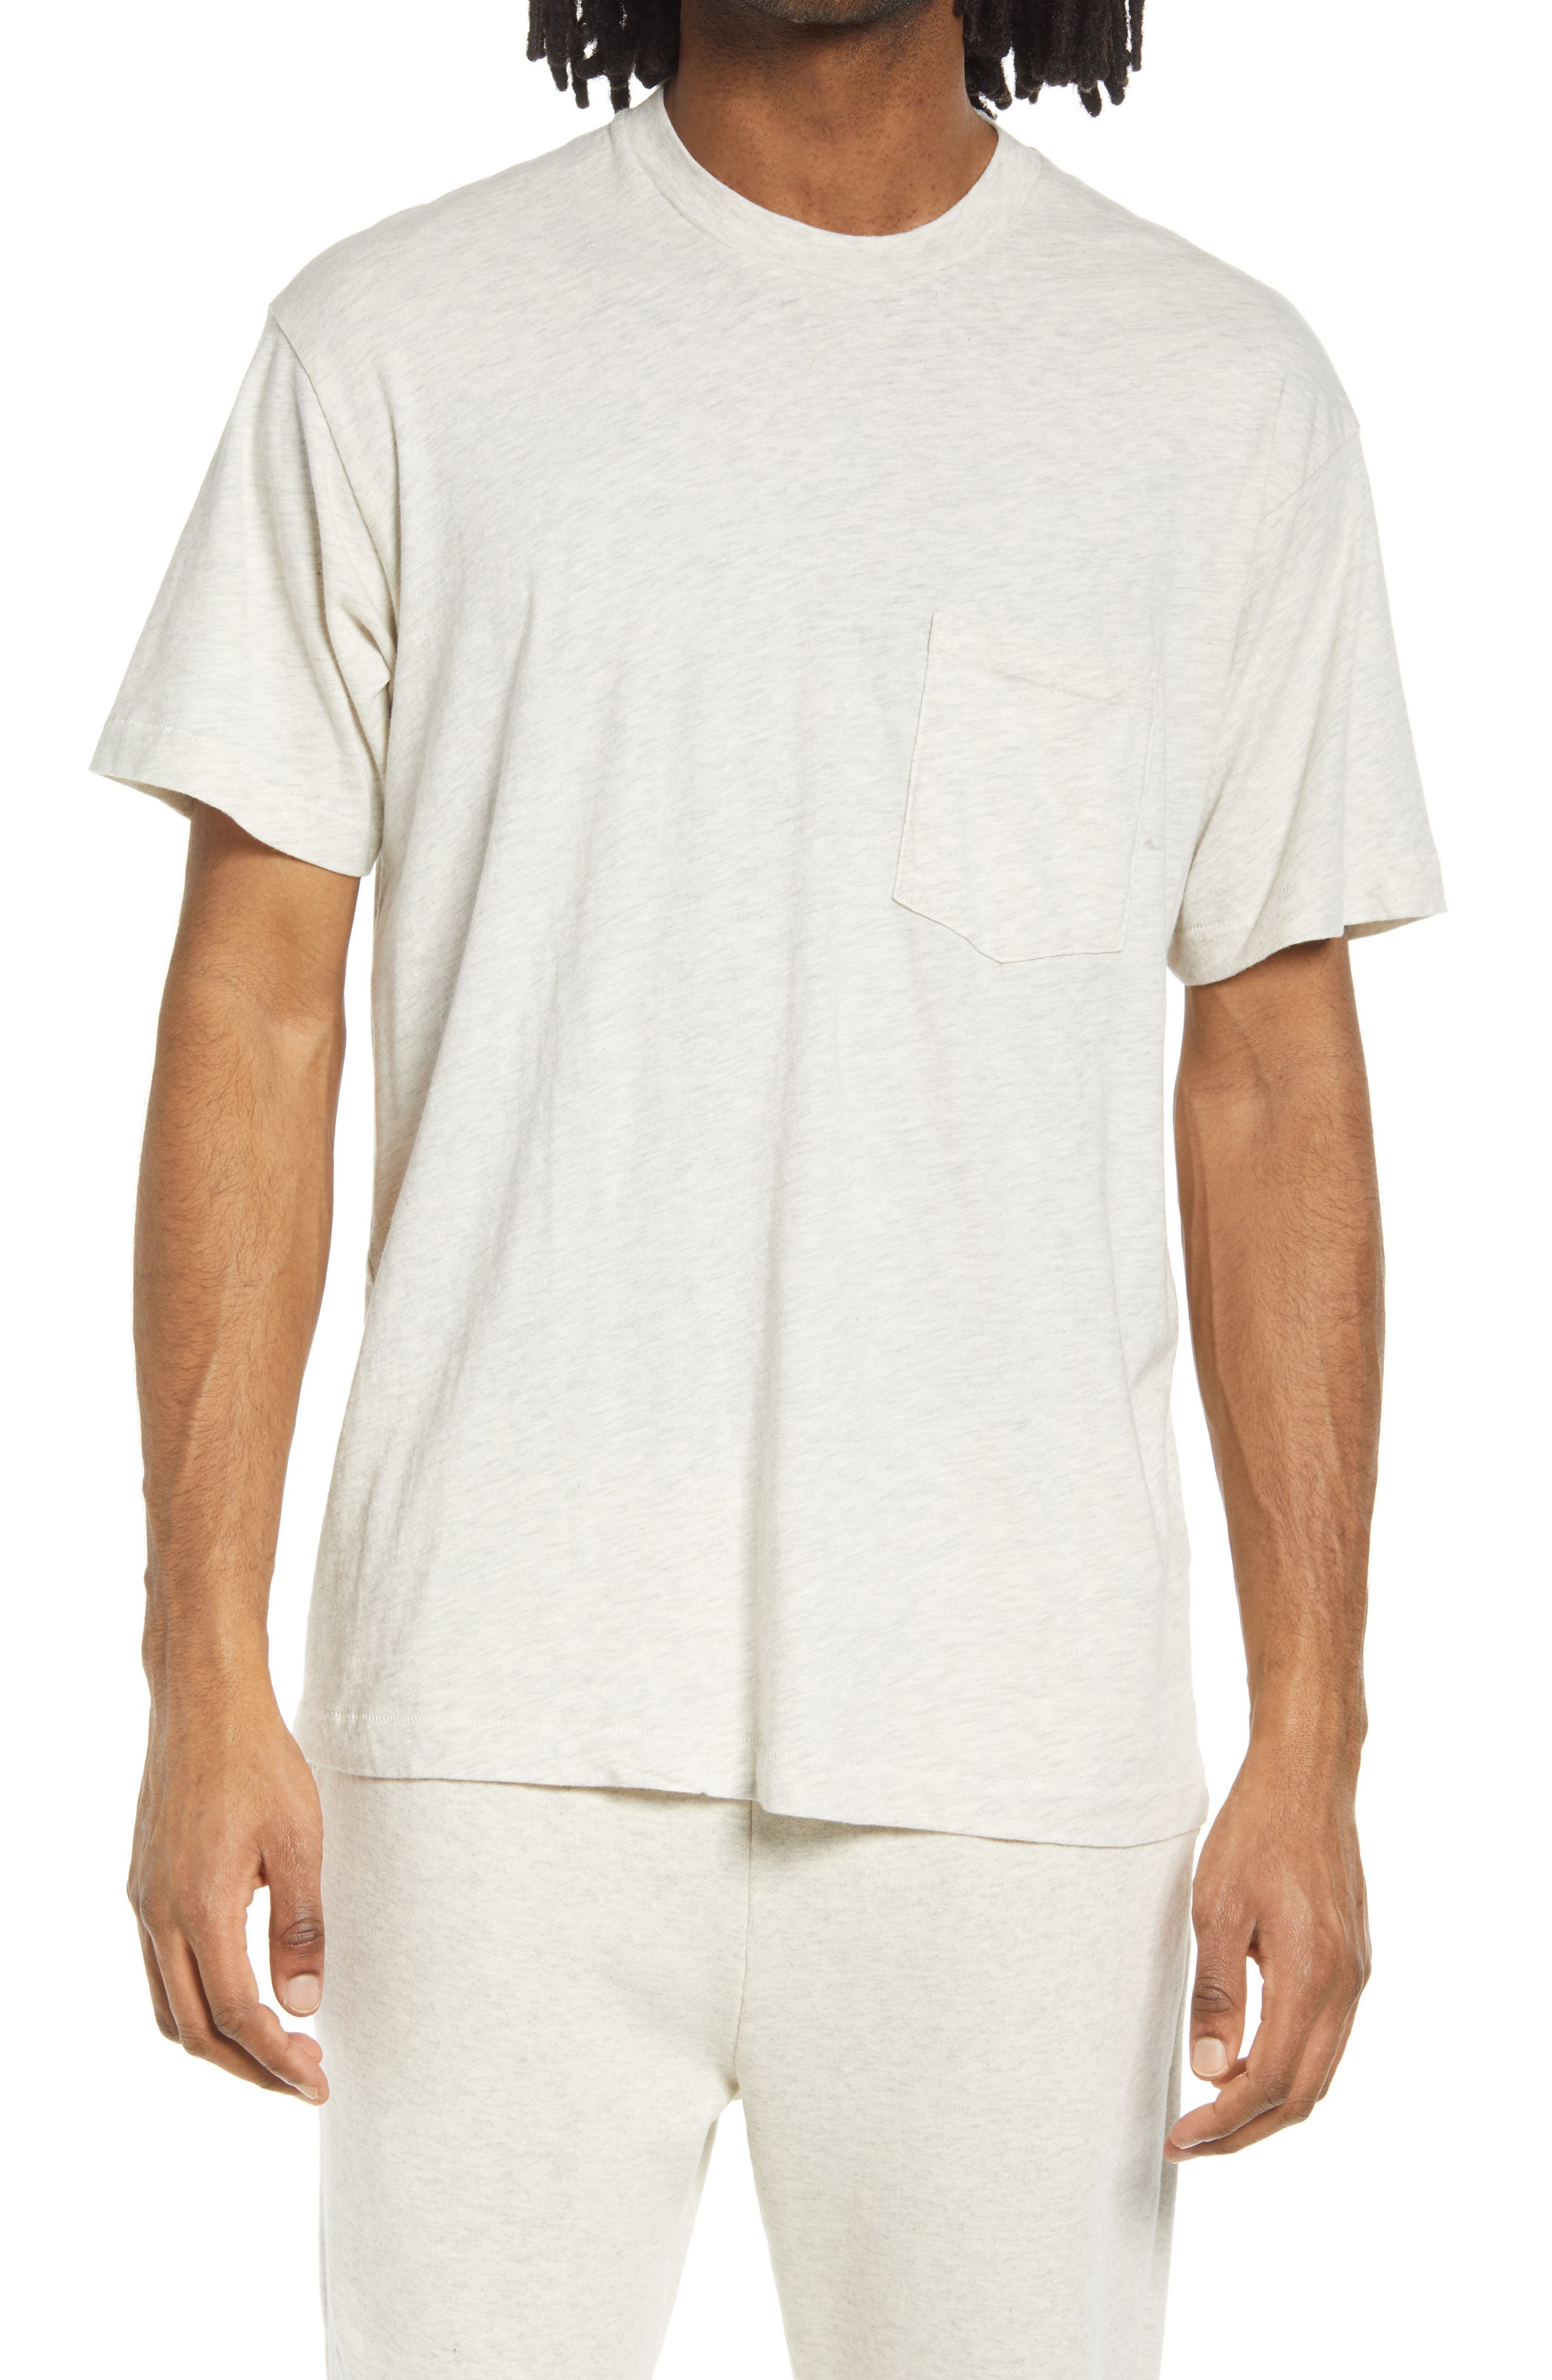 John Elliott Interval Men's Pocket T-Shirt in Oat at Nordstrom, Size X-Large